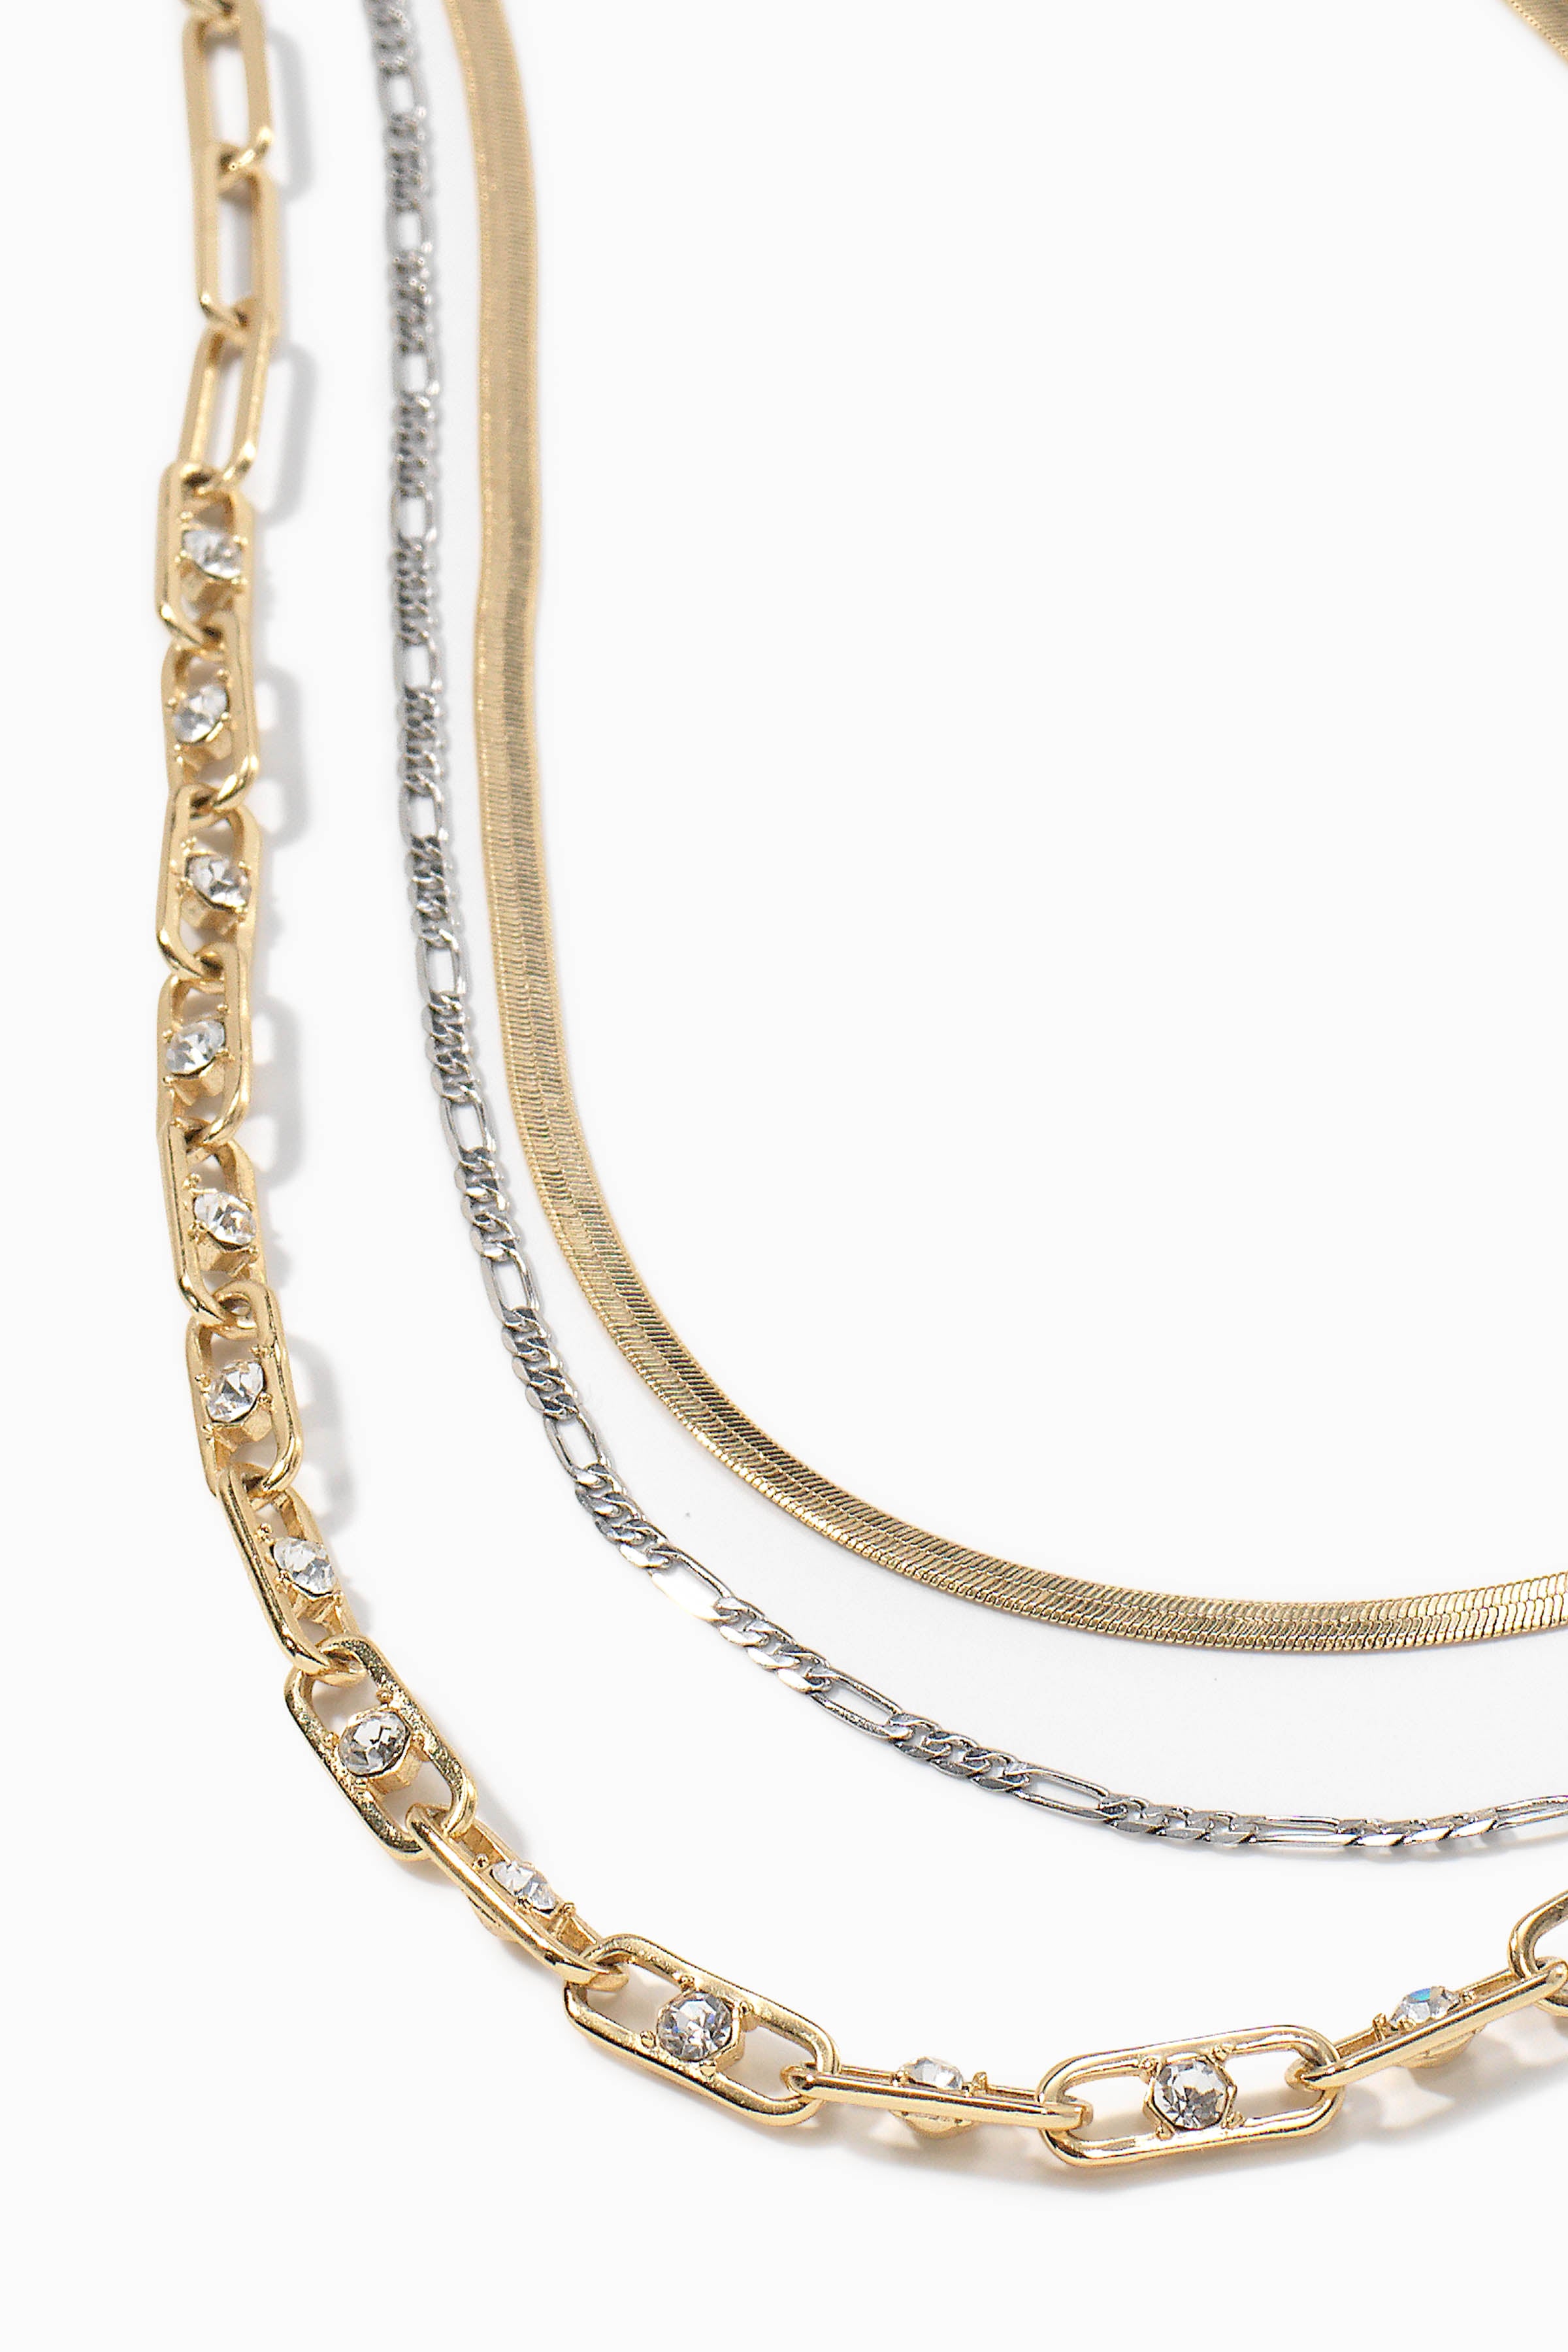 Diamond Heart Locket, 18k White Gold, LV Design, Gift, Neck Mess